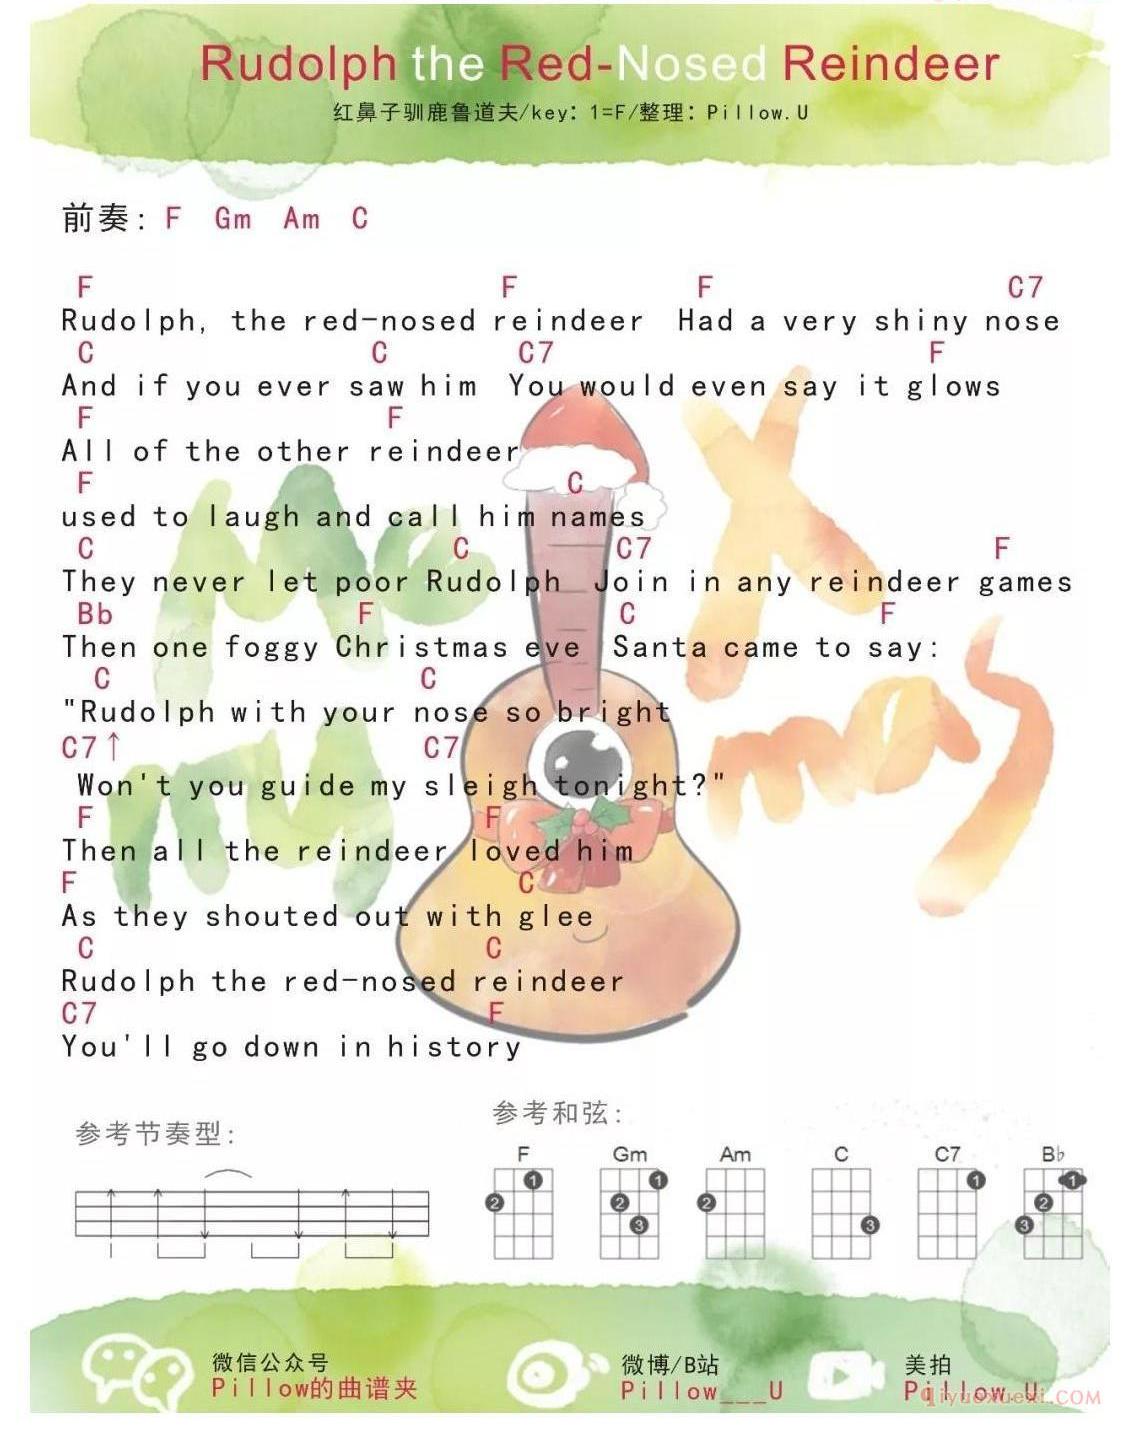 ukulele新手歌曲谱_红鼻子驯鹿鲁道夫_ukulele儿歌弹唱谱-圣诞歌曲